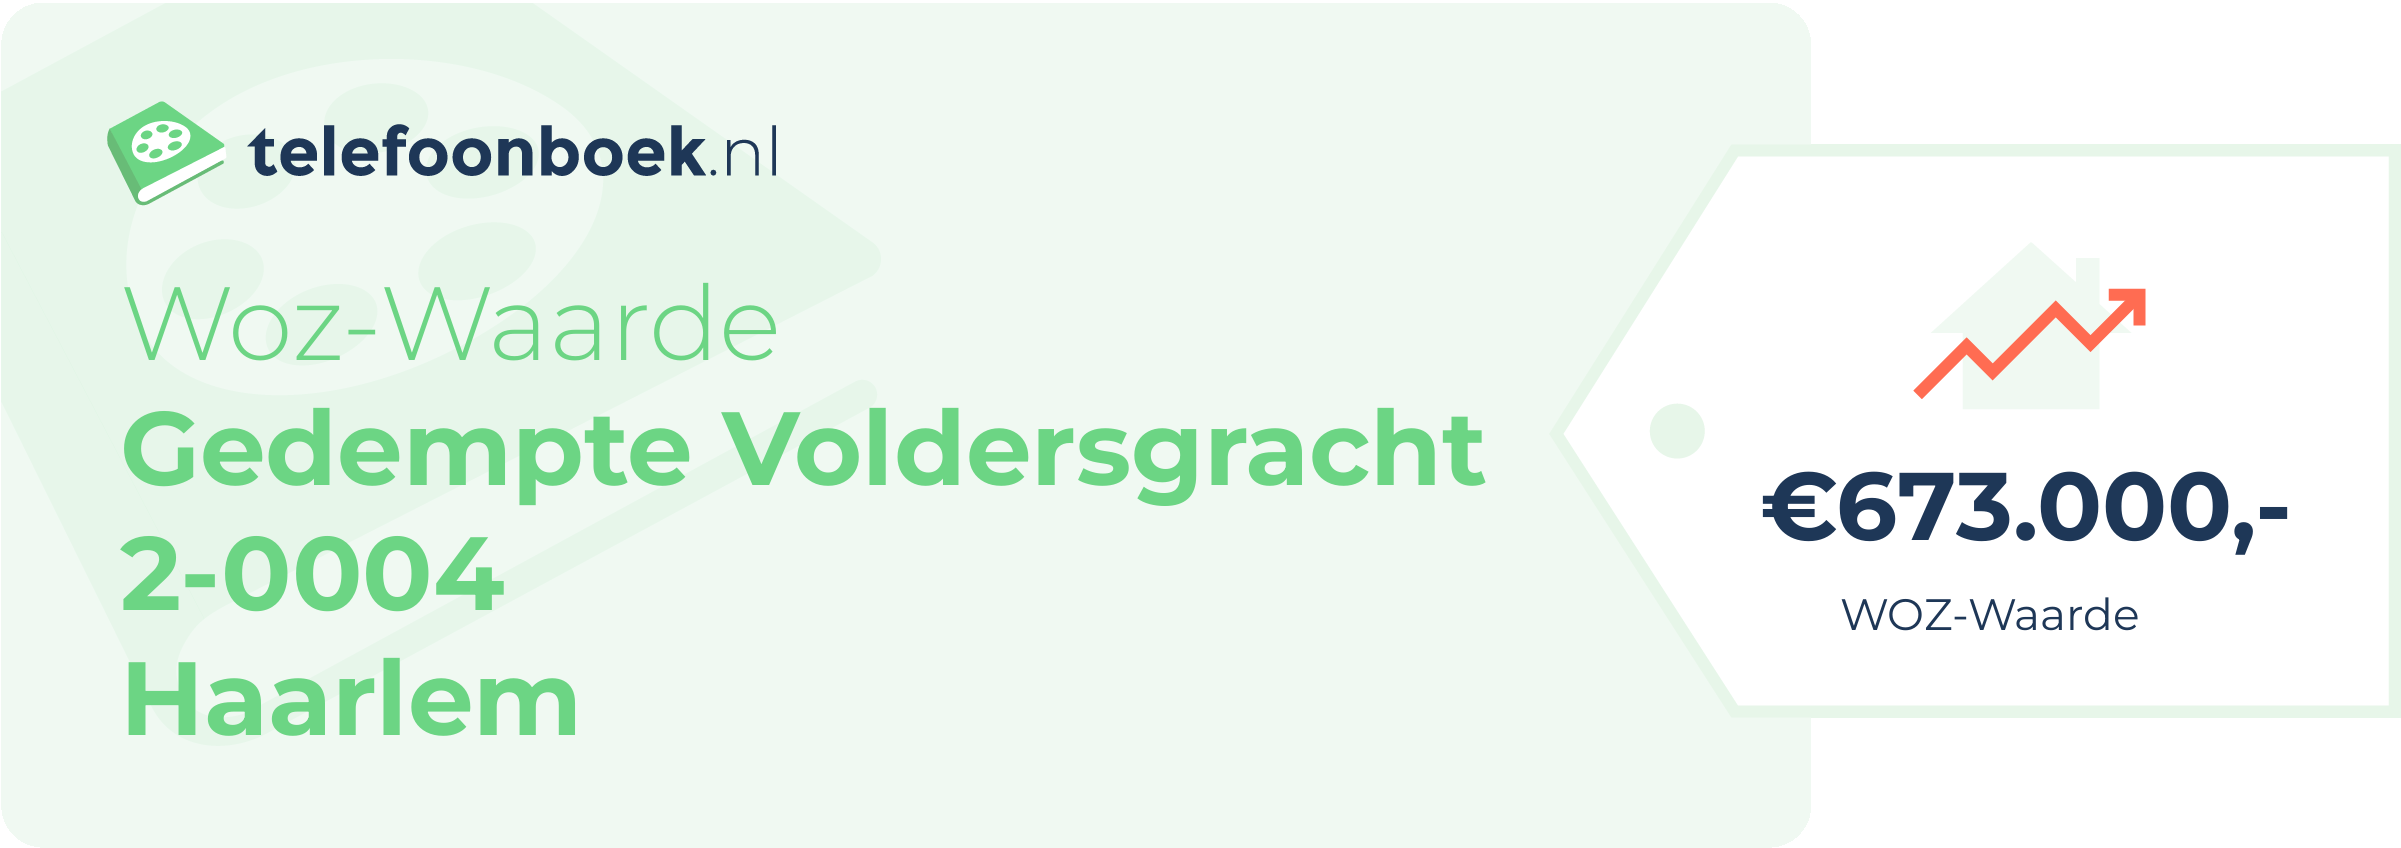 WOZ-waarde Gedempte Voldersgracht 2-0004 Haarlem